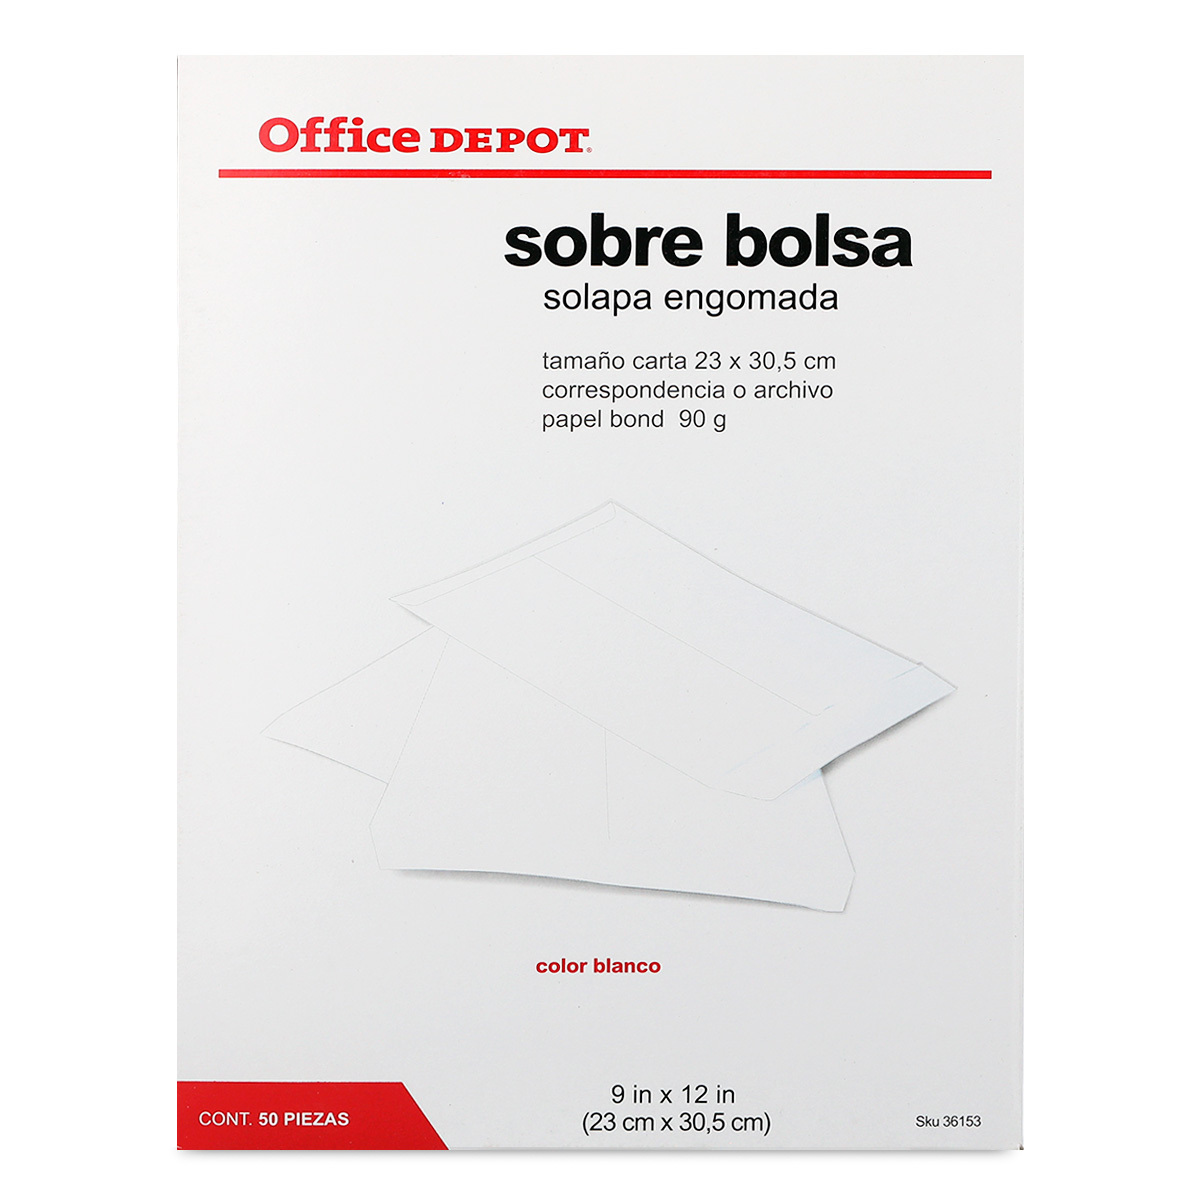 Sobres de Papel con Solapa Engomada Carta Office Depot / Blanco / 50 Piezas